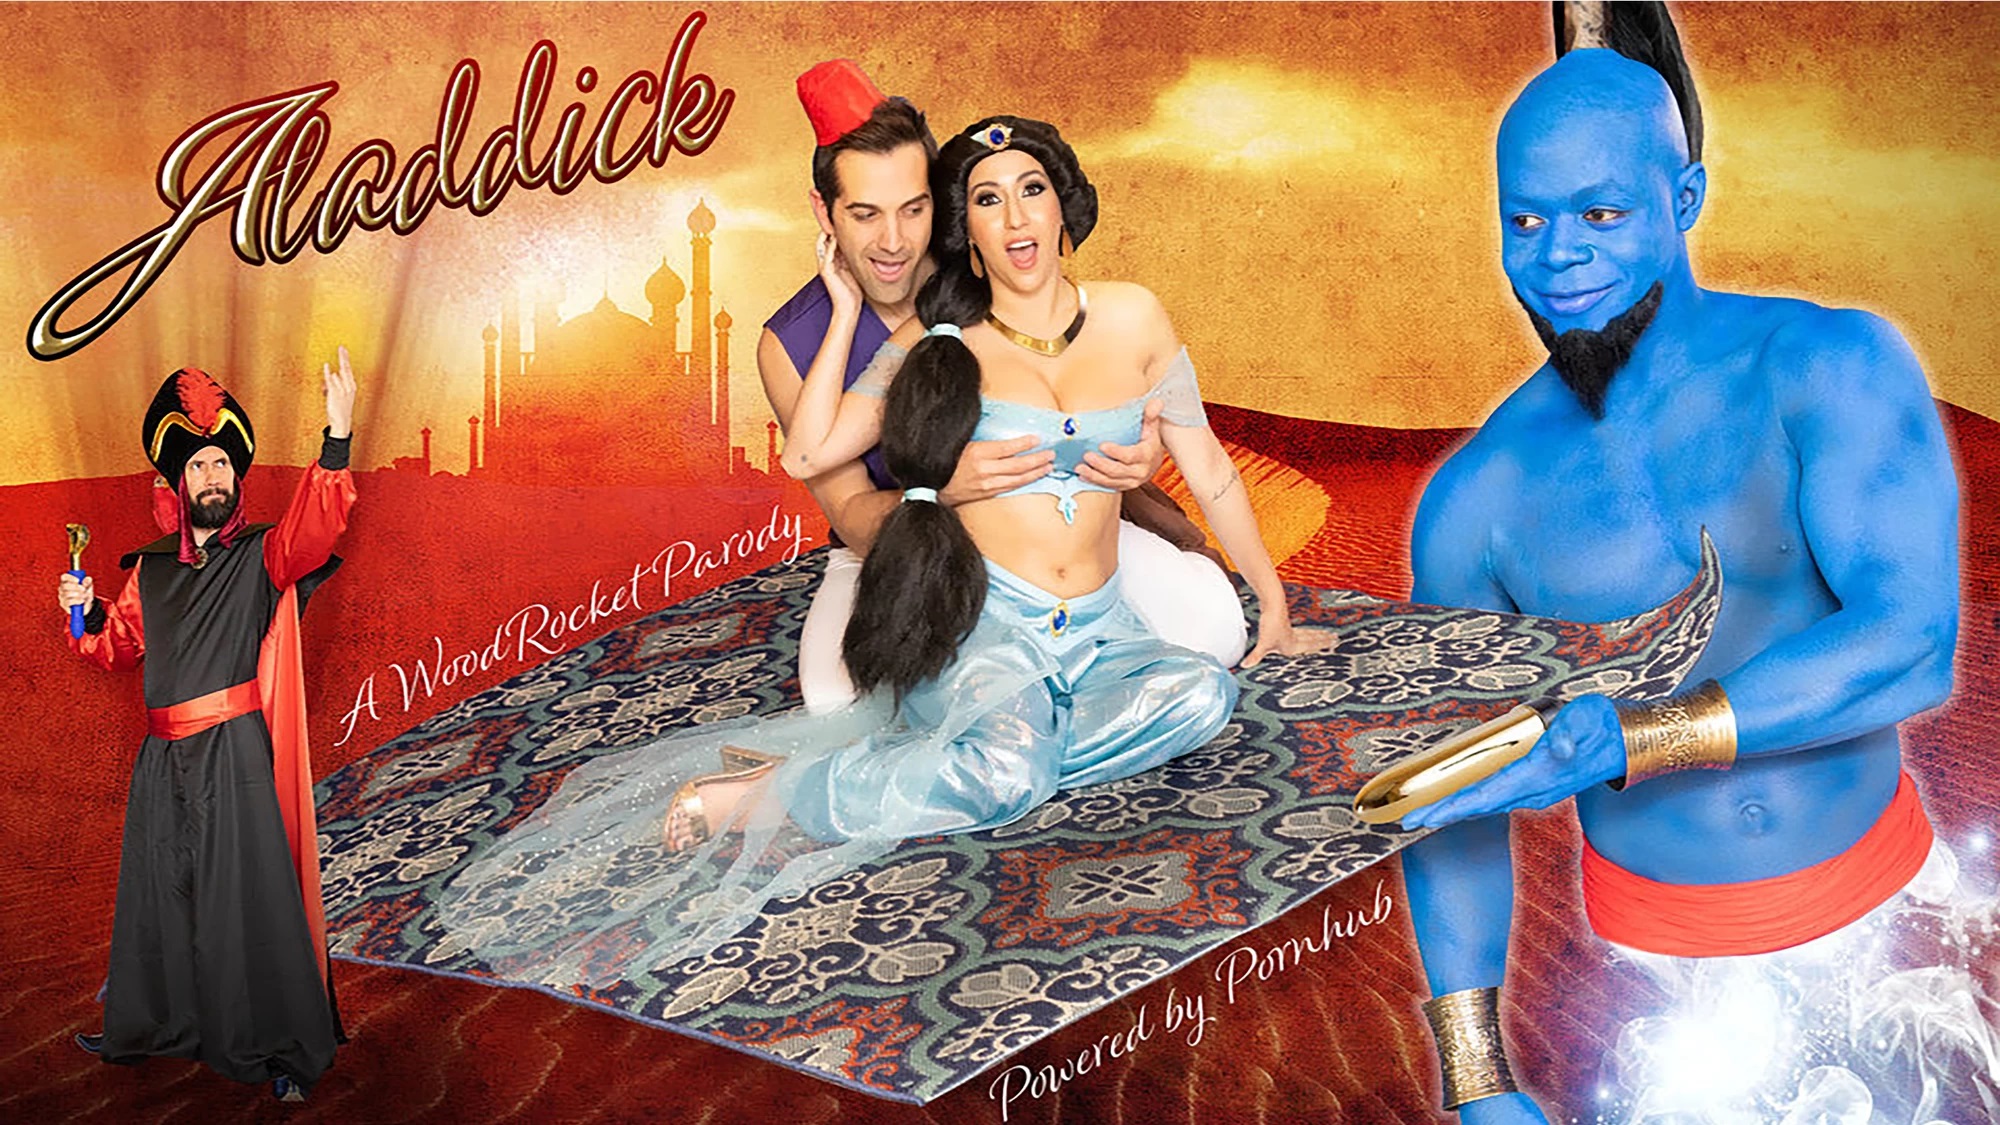 Peliculas de disney version porno Polemica En Disney Con Aladdick La Parodia Porno De Aladdin Cultture